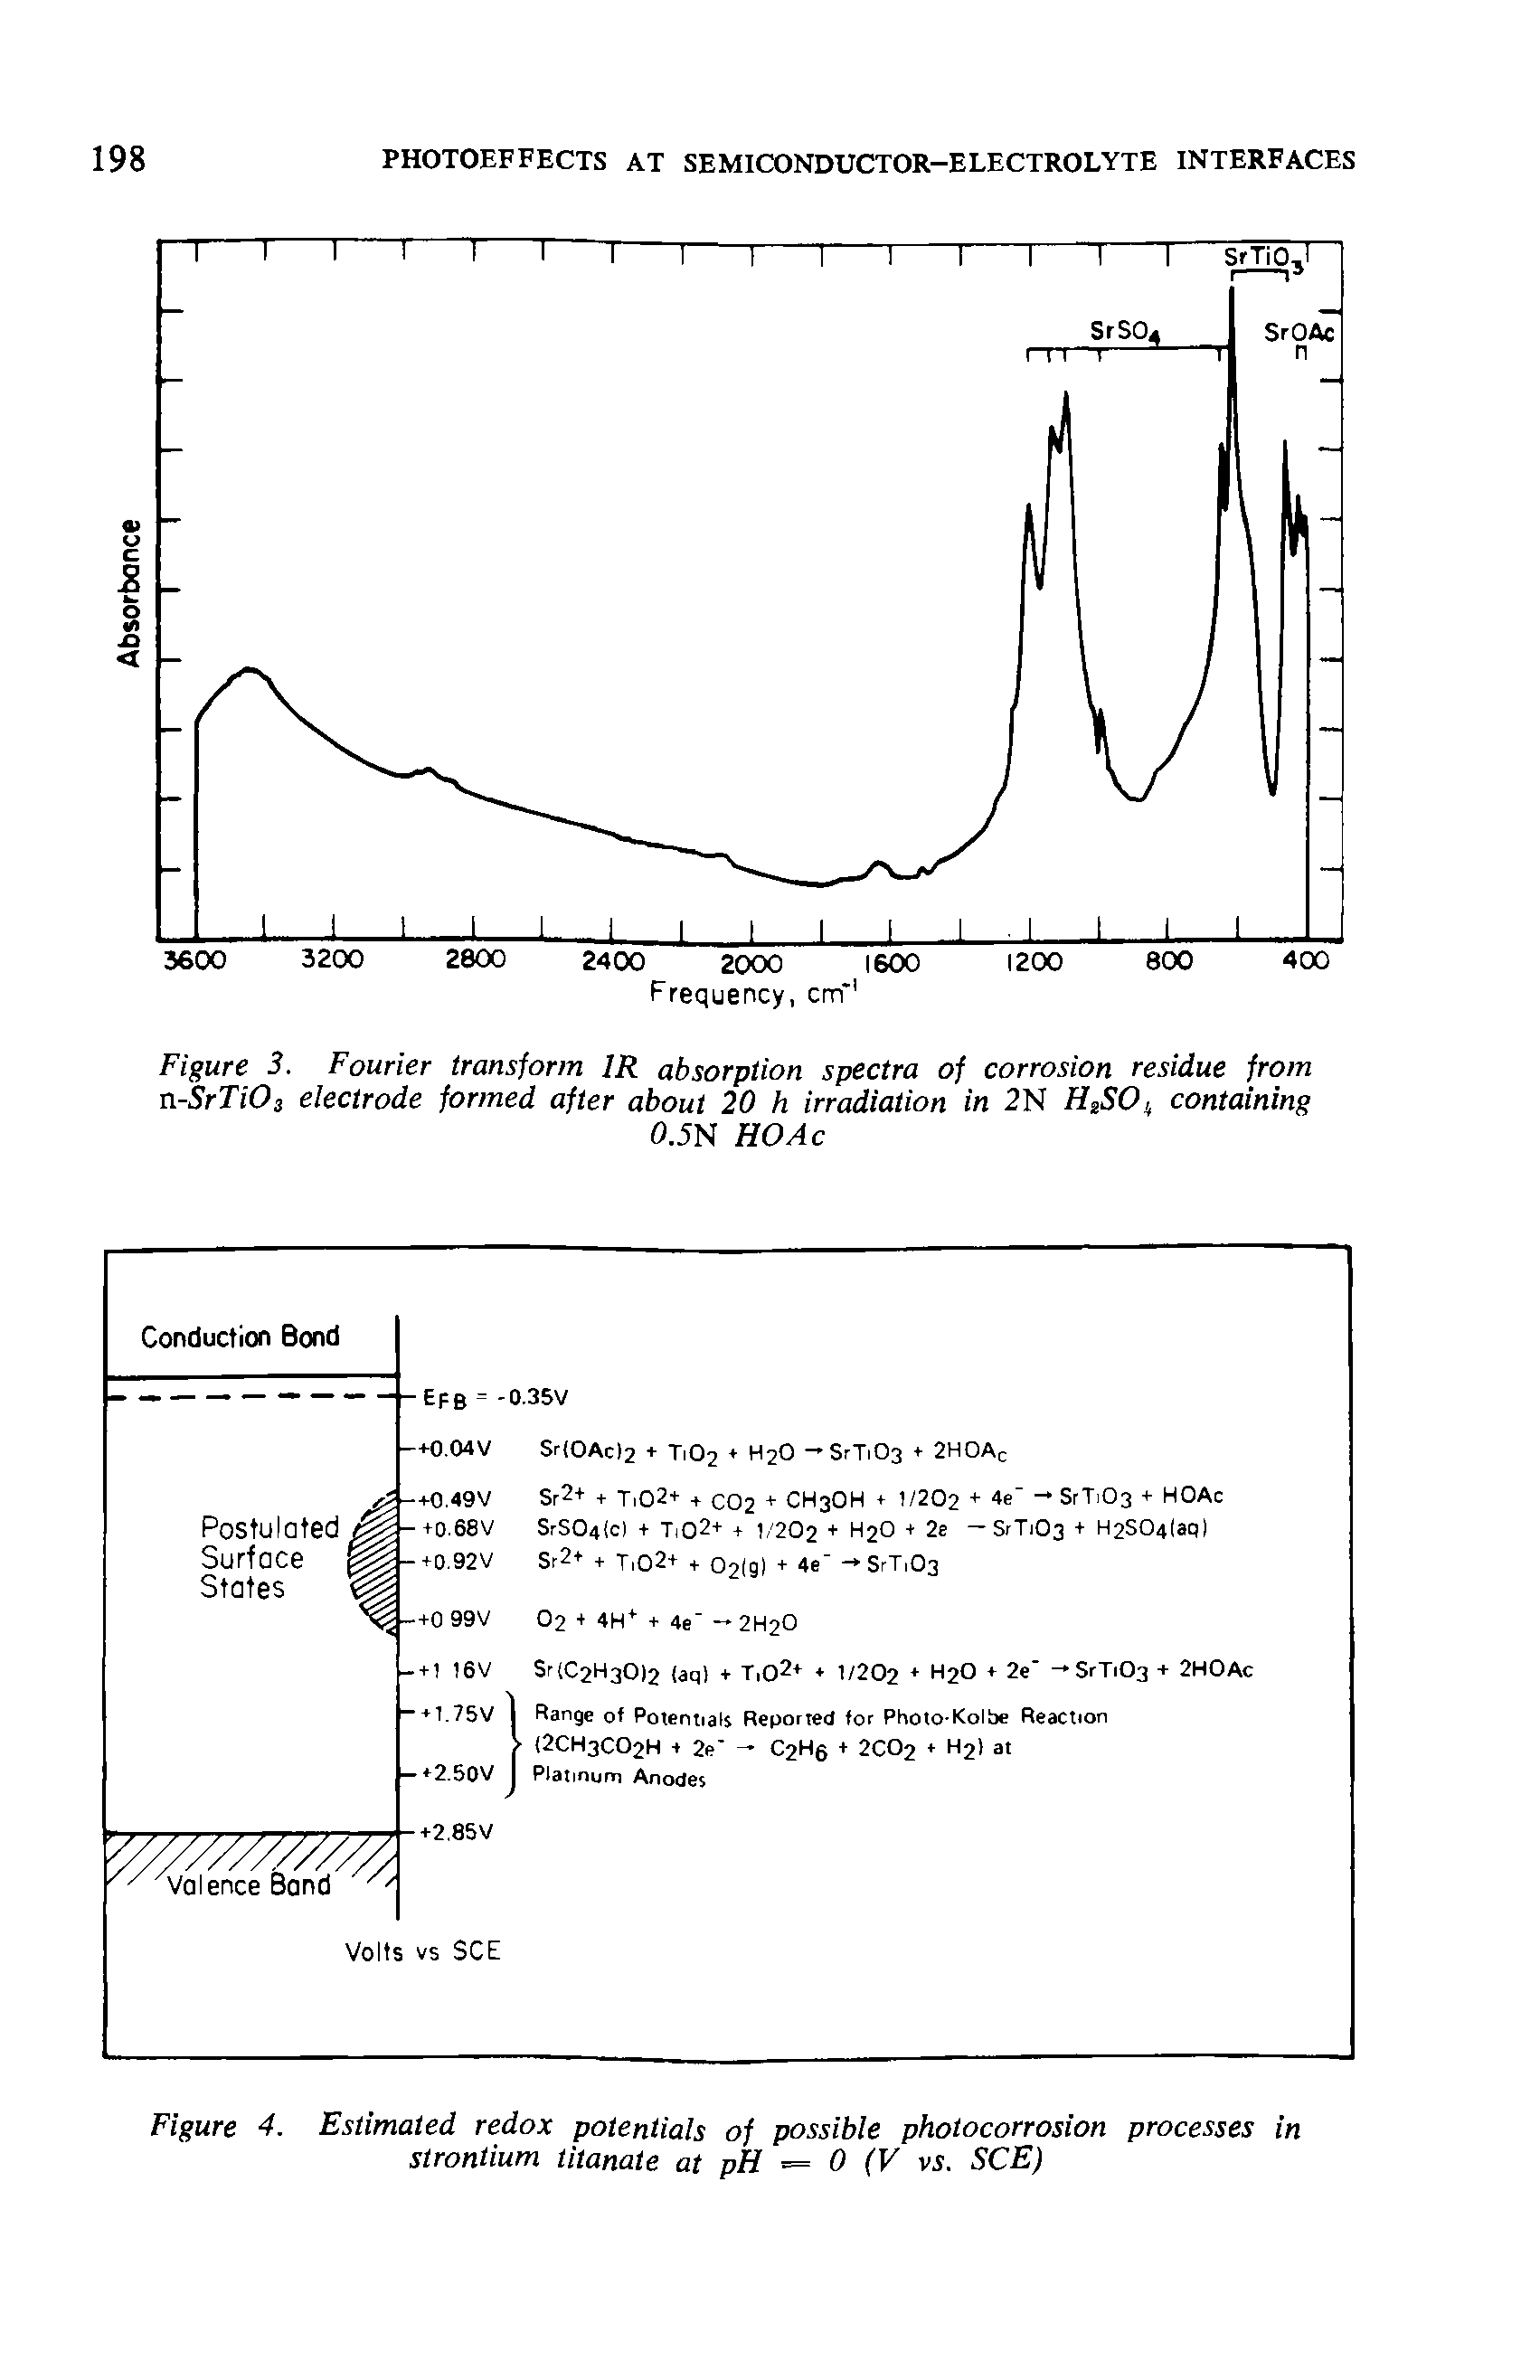 Figure 4. Estimated redox potentials of possible photocorrosion processes in strontium titanate at pH = 0 (V vi. SCE)...